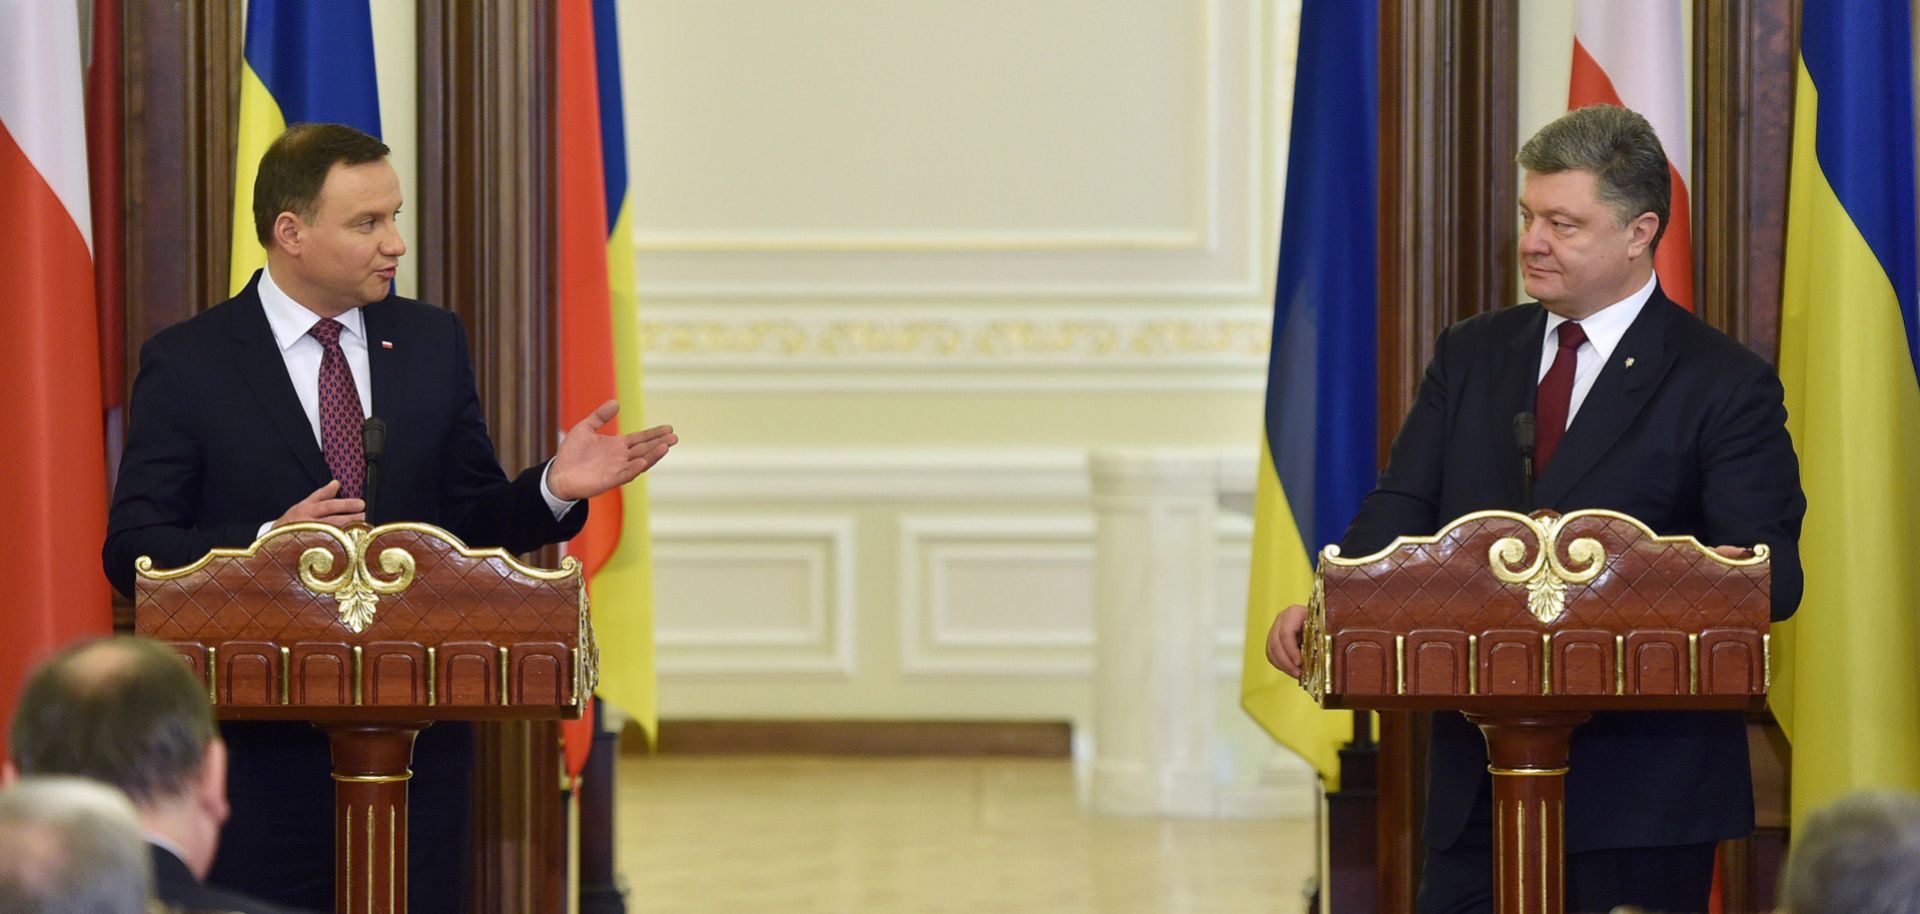 Ukrainian President Petro Poroshenko attends a joint press conference with Polish President Andrzej Duda in Kiev in December 2015.